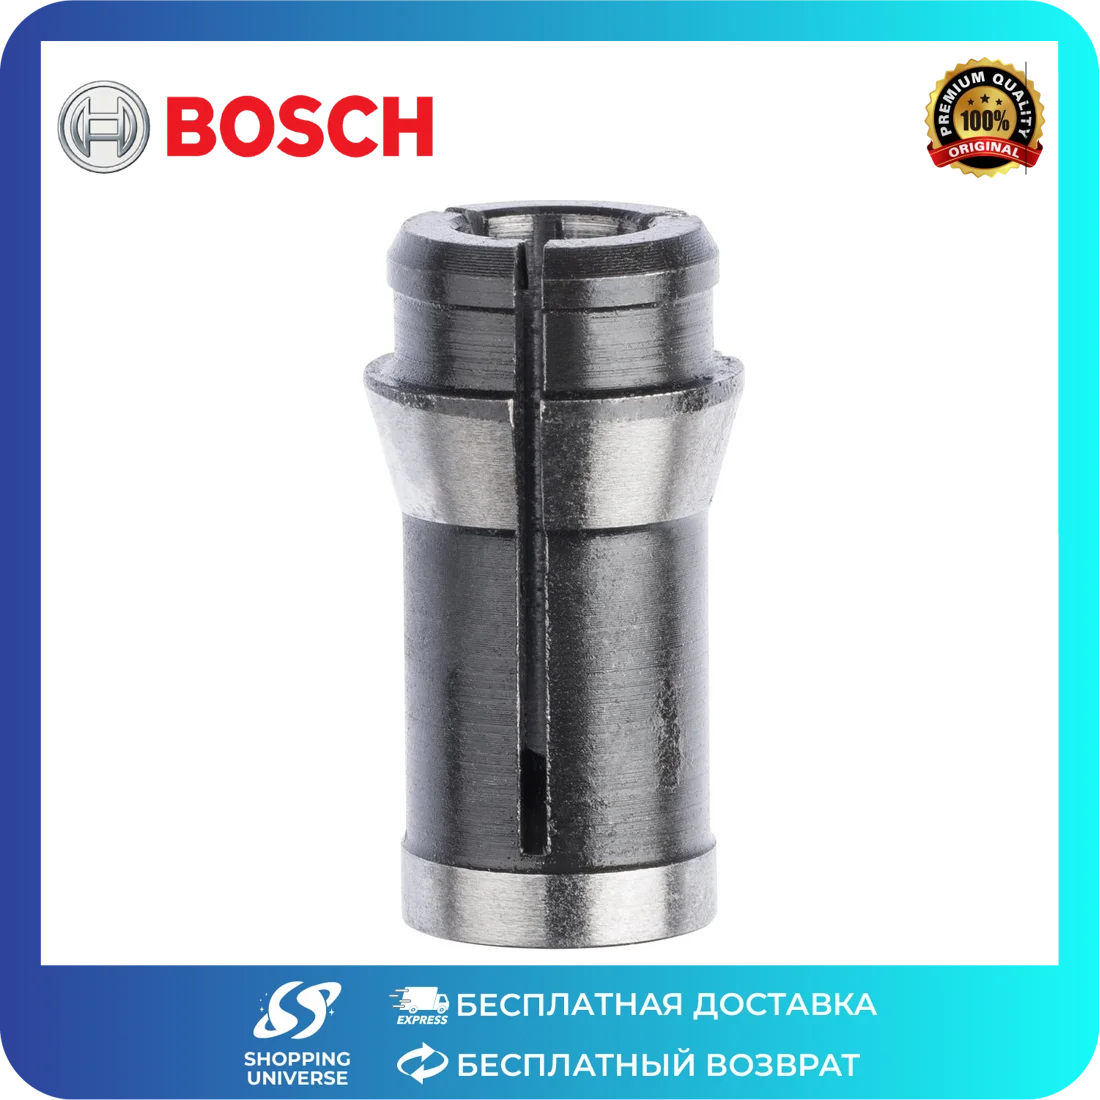 Цанга Bosch 6мм для GGS 28. Цанга для фрезера 8 мм Bosch. Цанга бош 8мм для фрезера. Цанга на 6 мм Bosch. Цанги для фрез